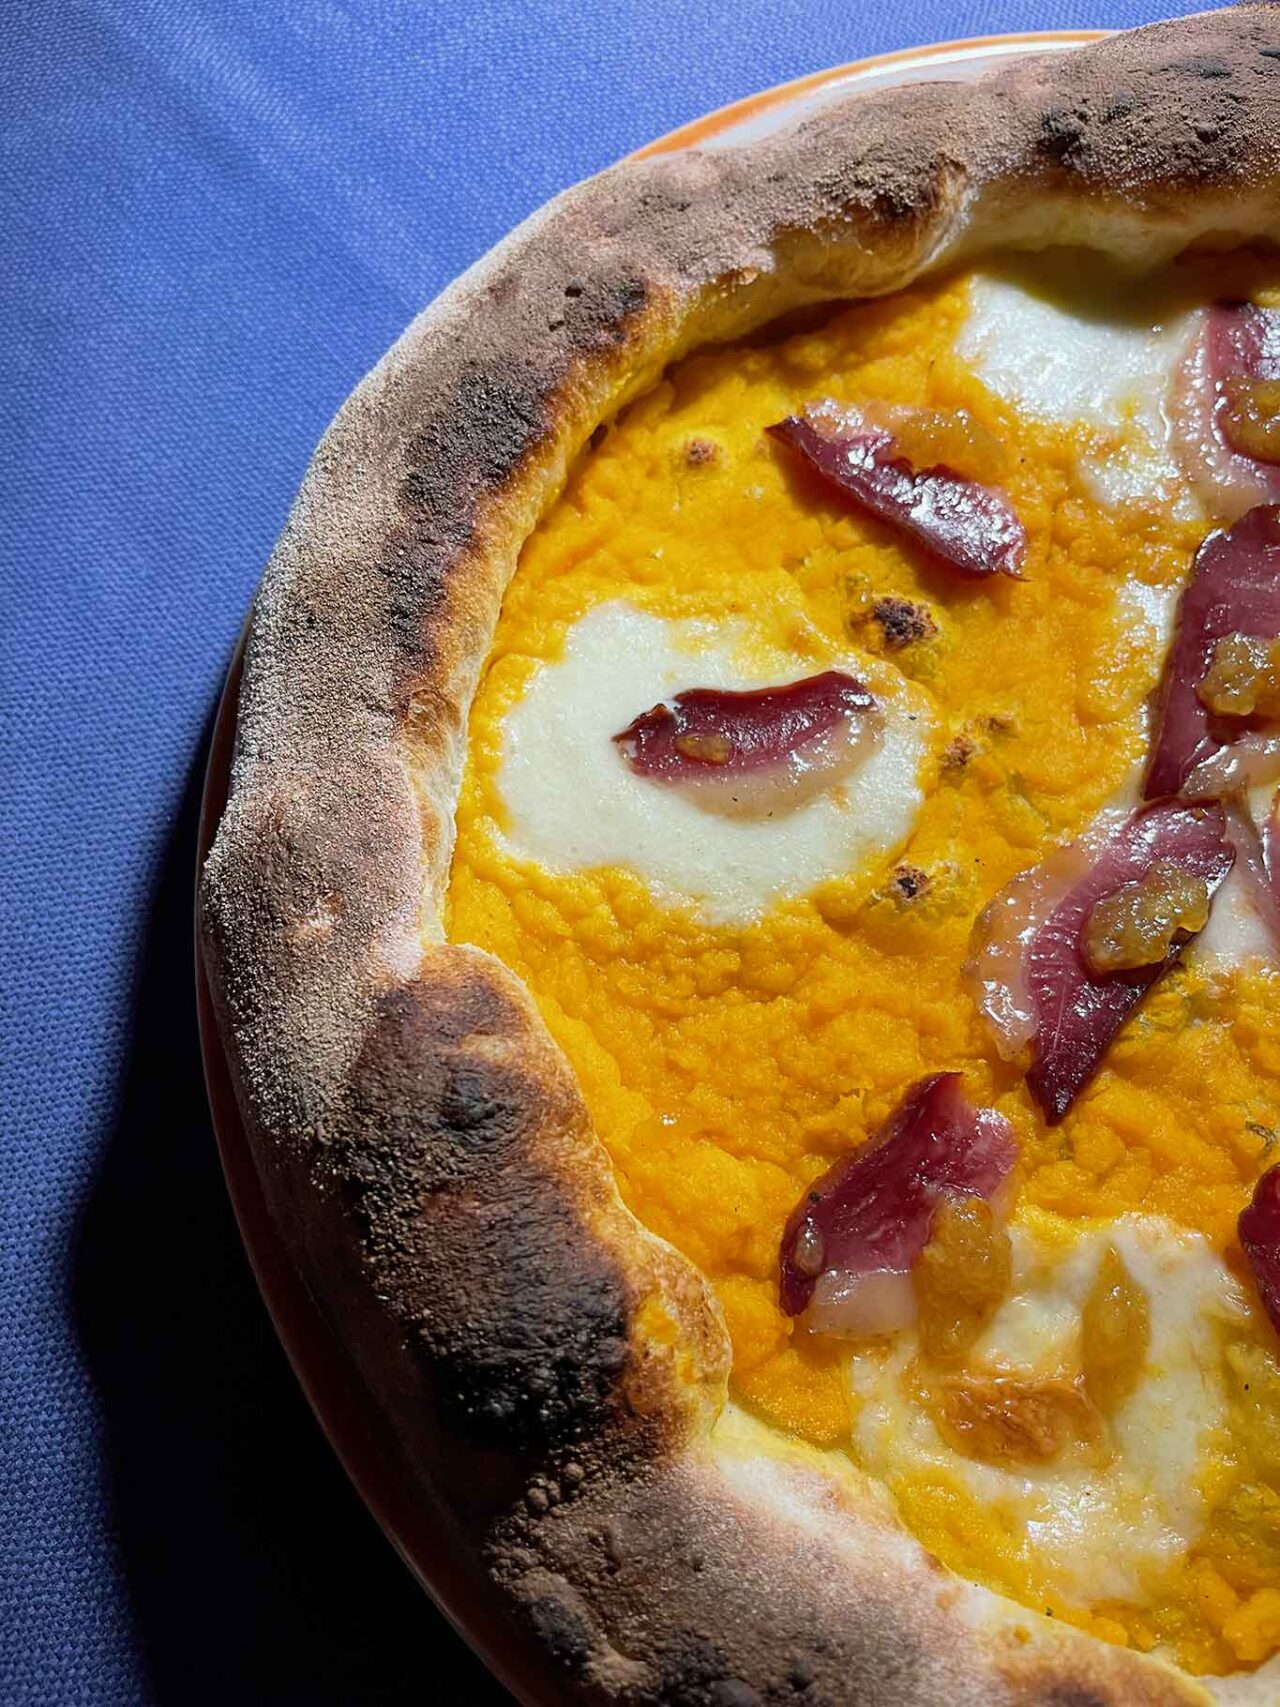 la pizza Spezieria della pizzeria Caveau nella cava di Ispica in Sicilia